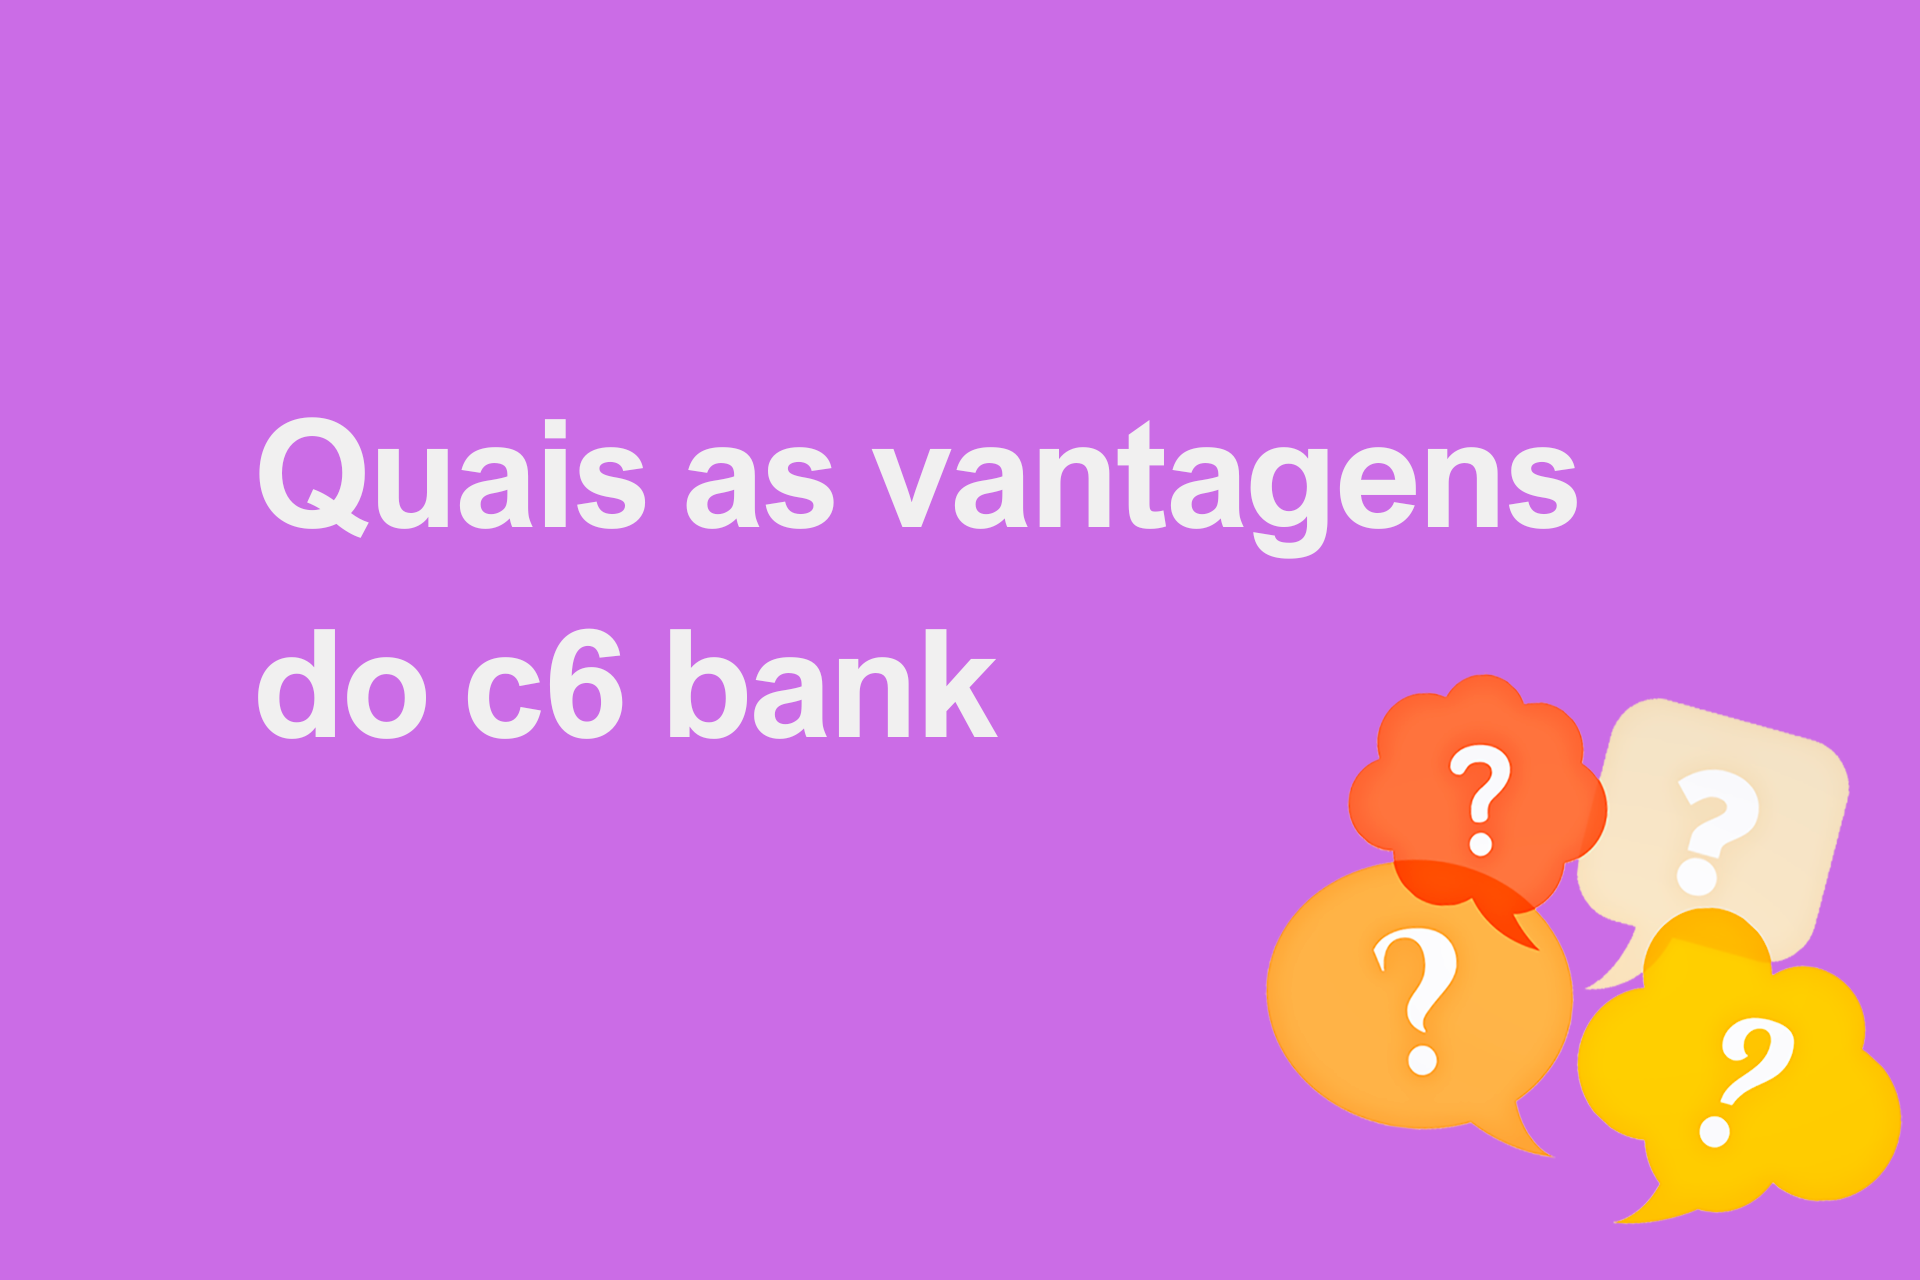 Quais as vantagens do c6 bank?